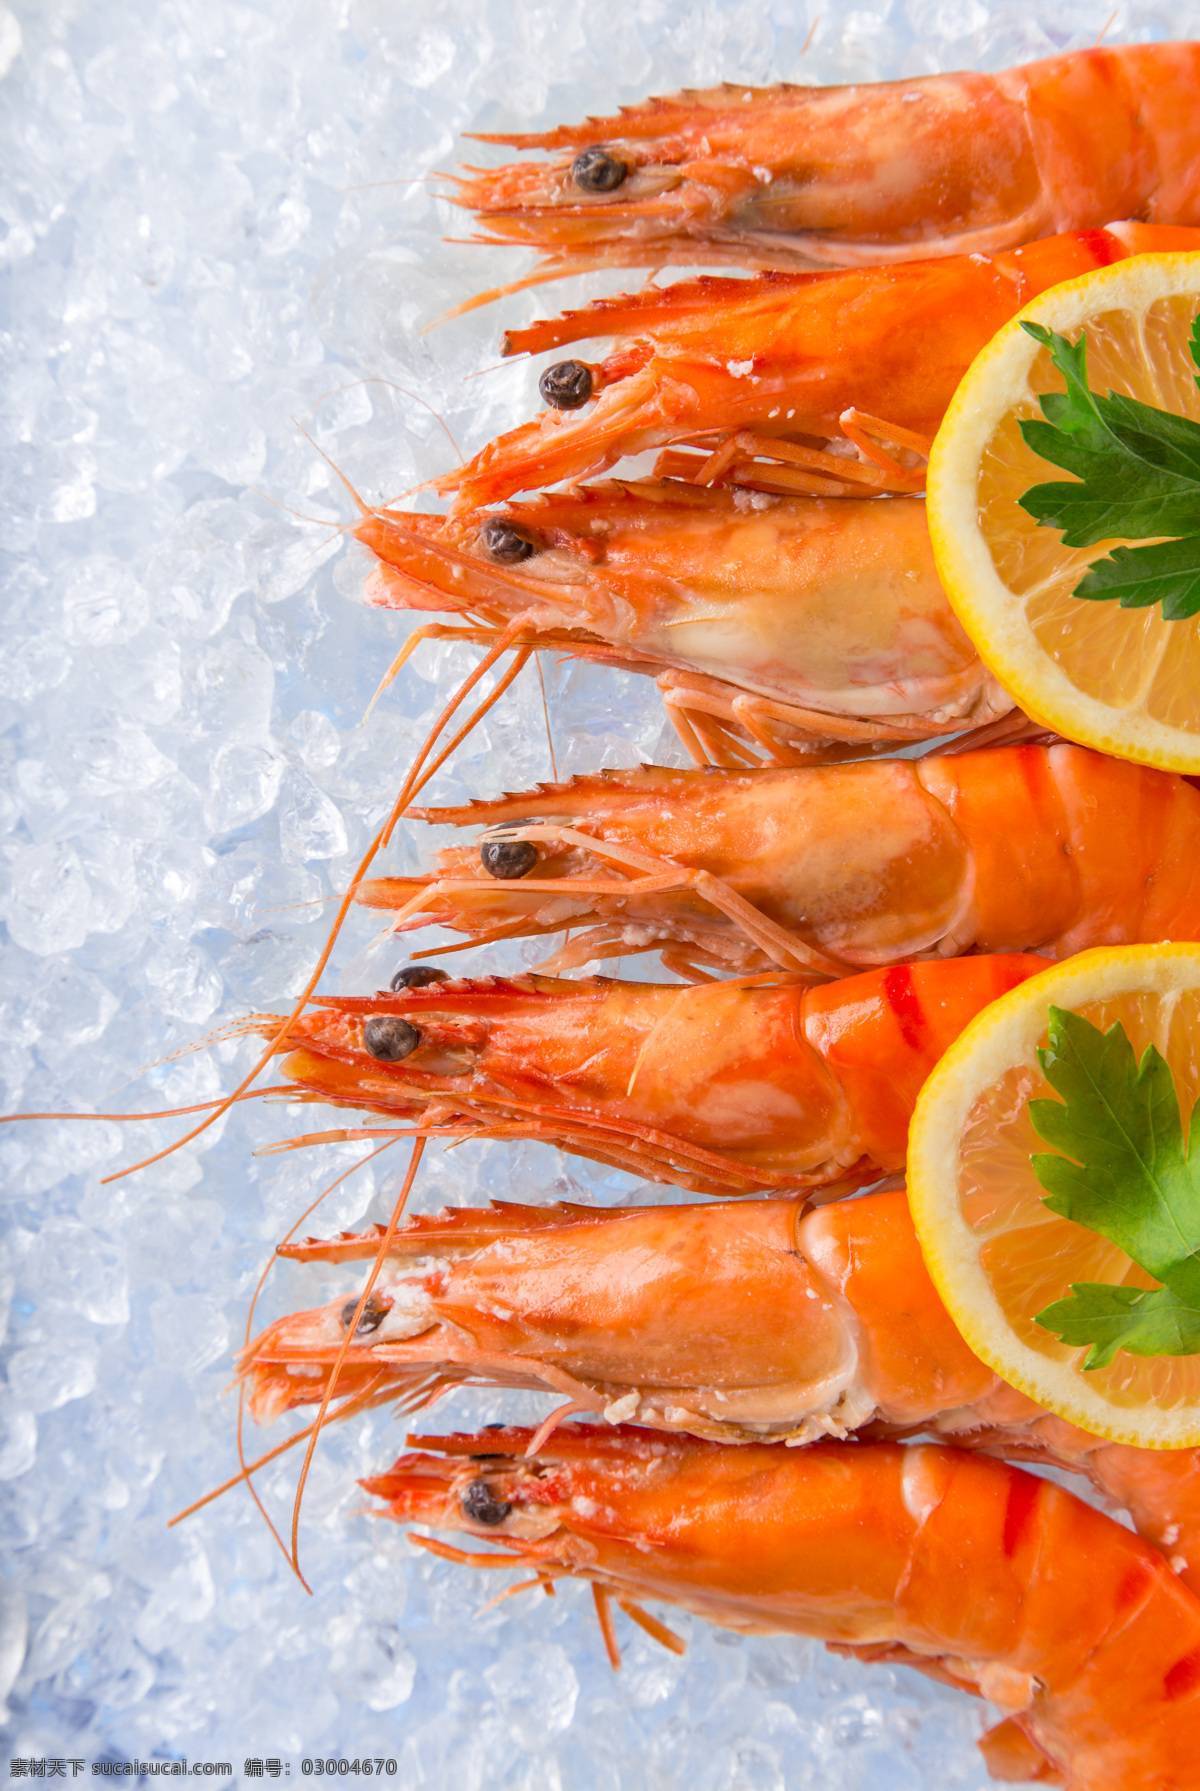 大虾 虾仁 红虾 海鲜 海虾 蒸虾 虾 生物世界 海洋生物 餐饮美食 西餐美食